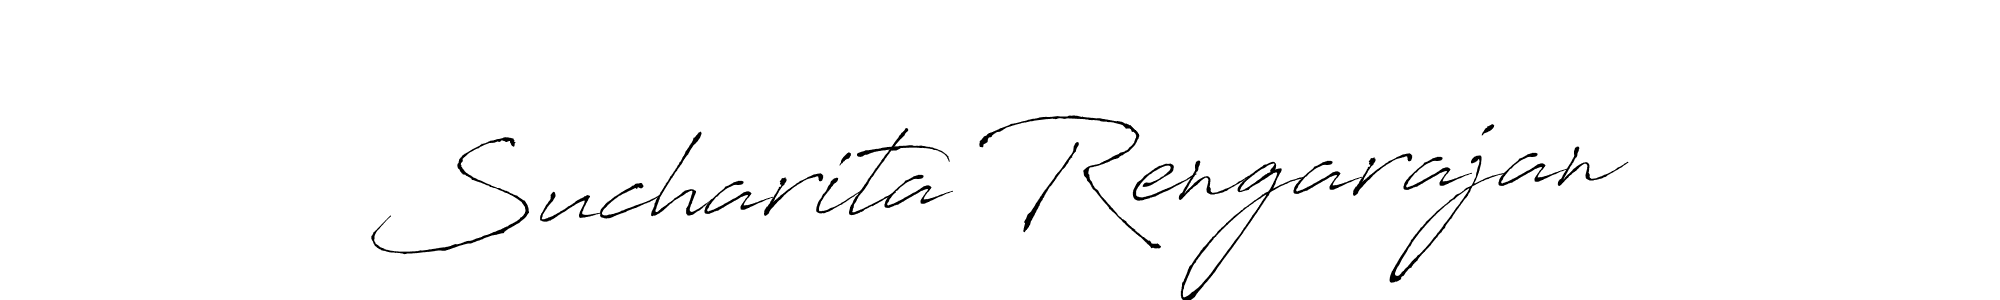 How to Draw Sucharita Rengarajan signature style? Antro_Vectra is a latest design signature styles for name Sucharita Rengarajan. Sucharita Rengarajan signature style 6 images and pictures png